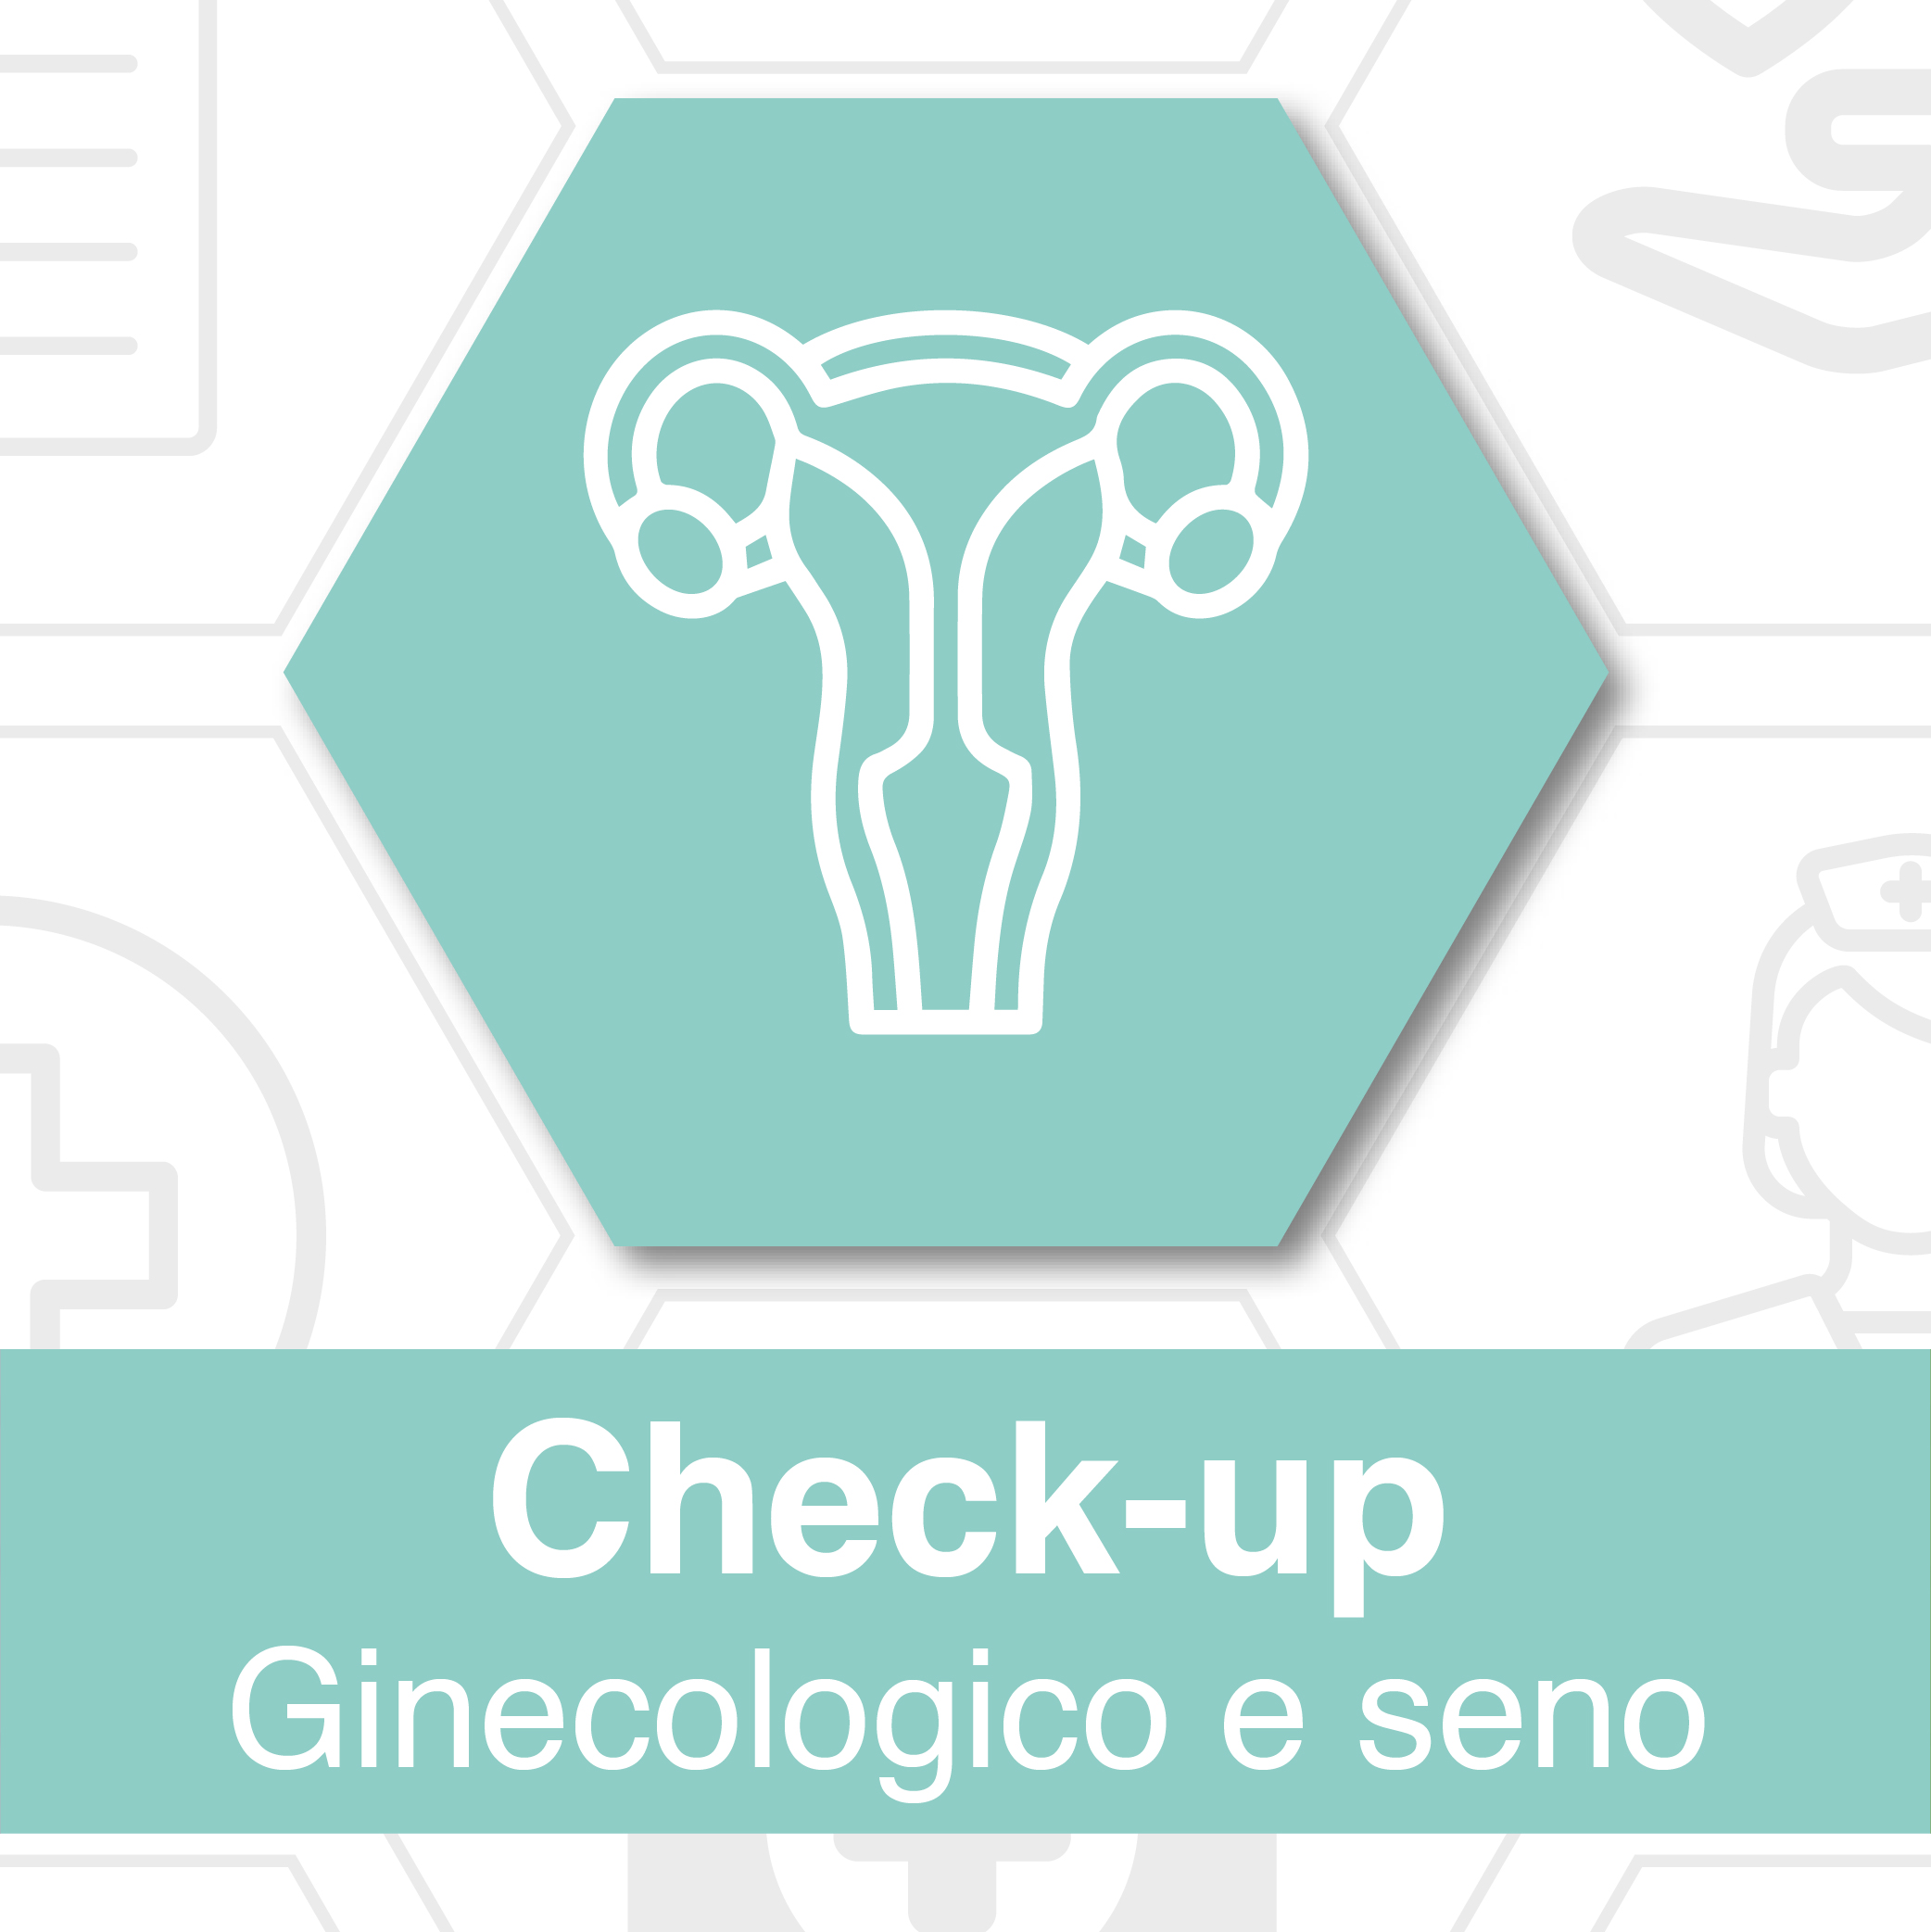 Foto locandina check up prevenzione ginecologico seno